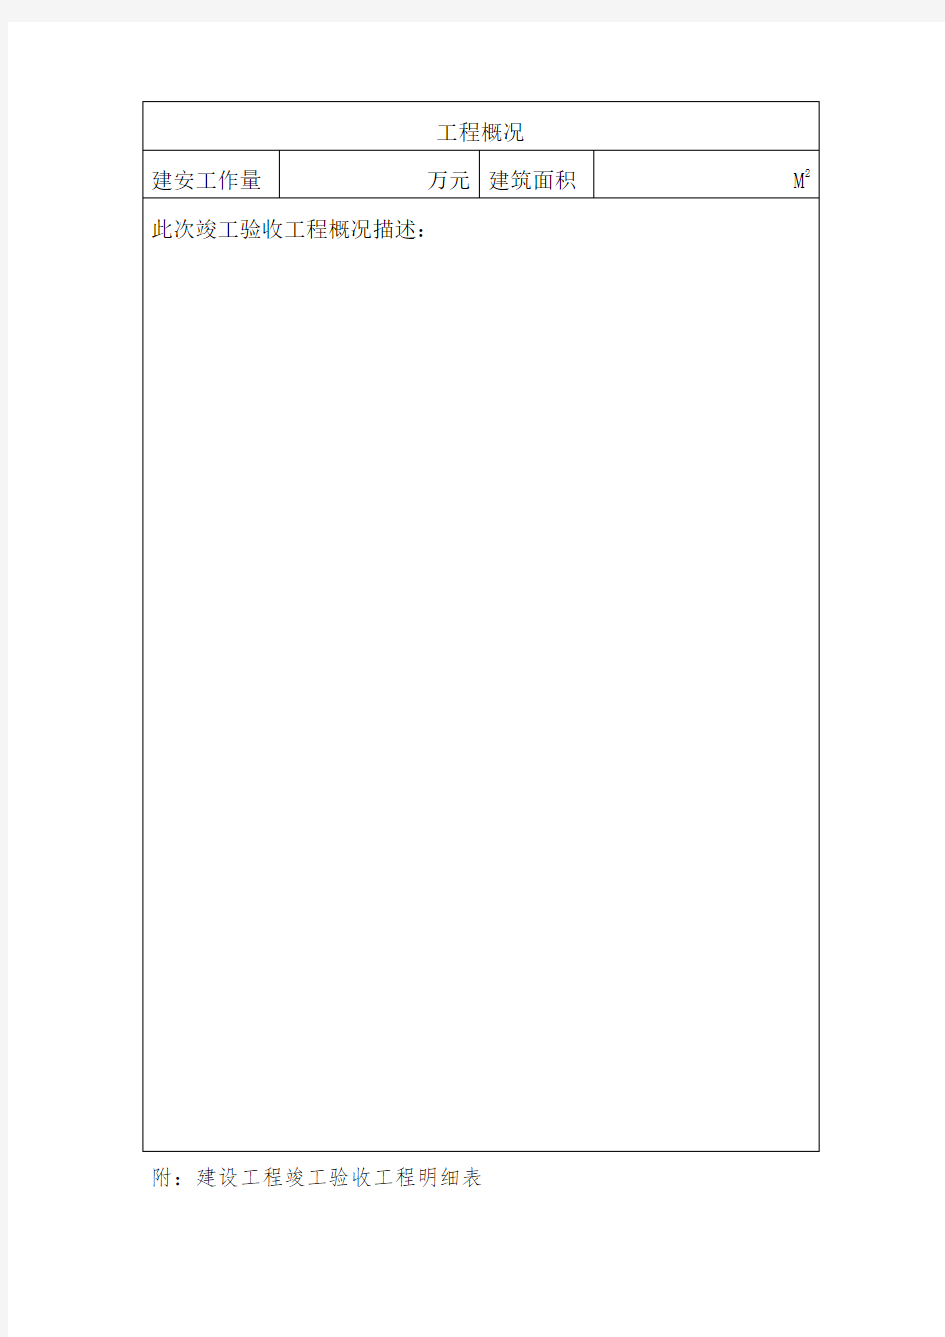 上海市建设工程竣工验收报告及竣工验收工程明细表